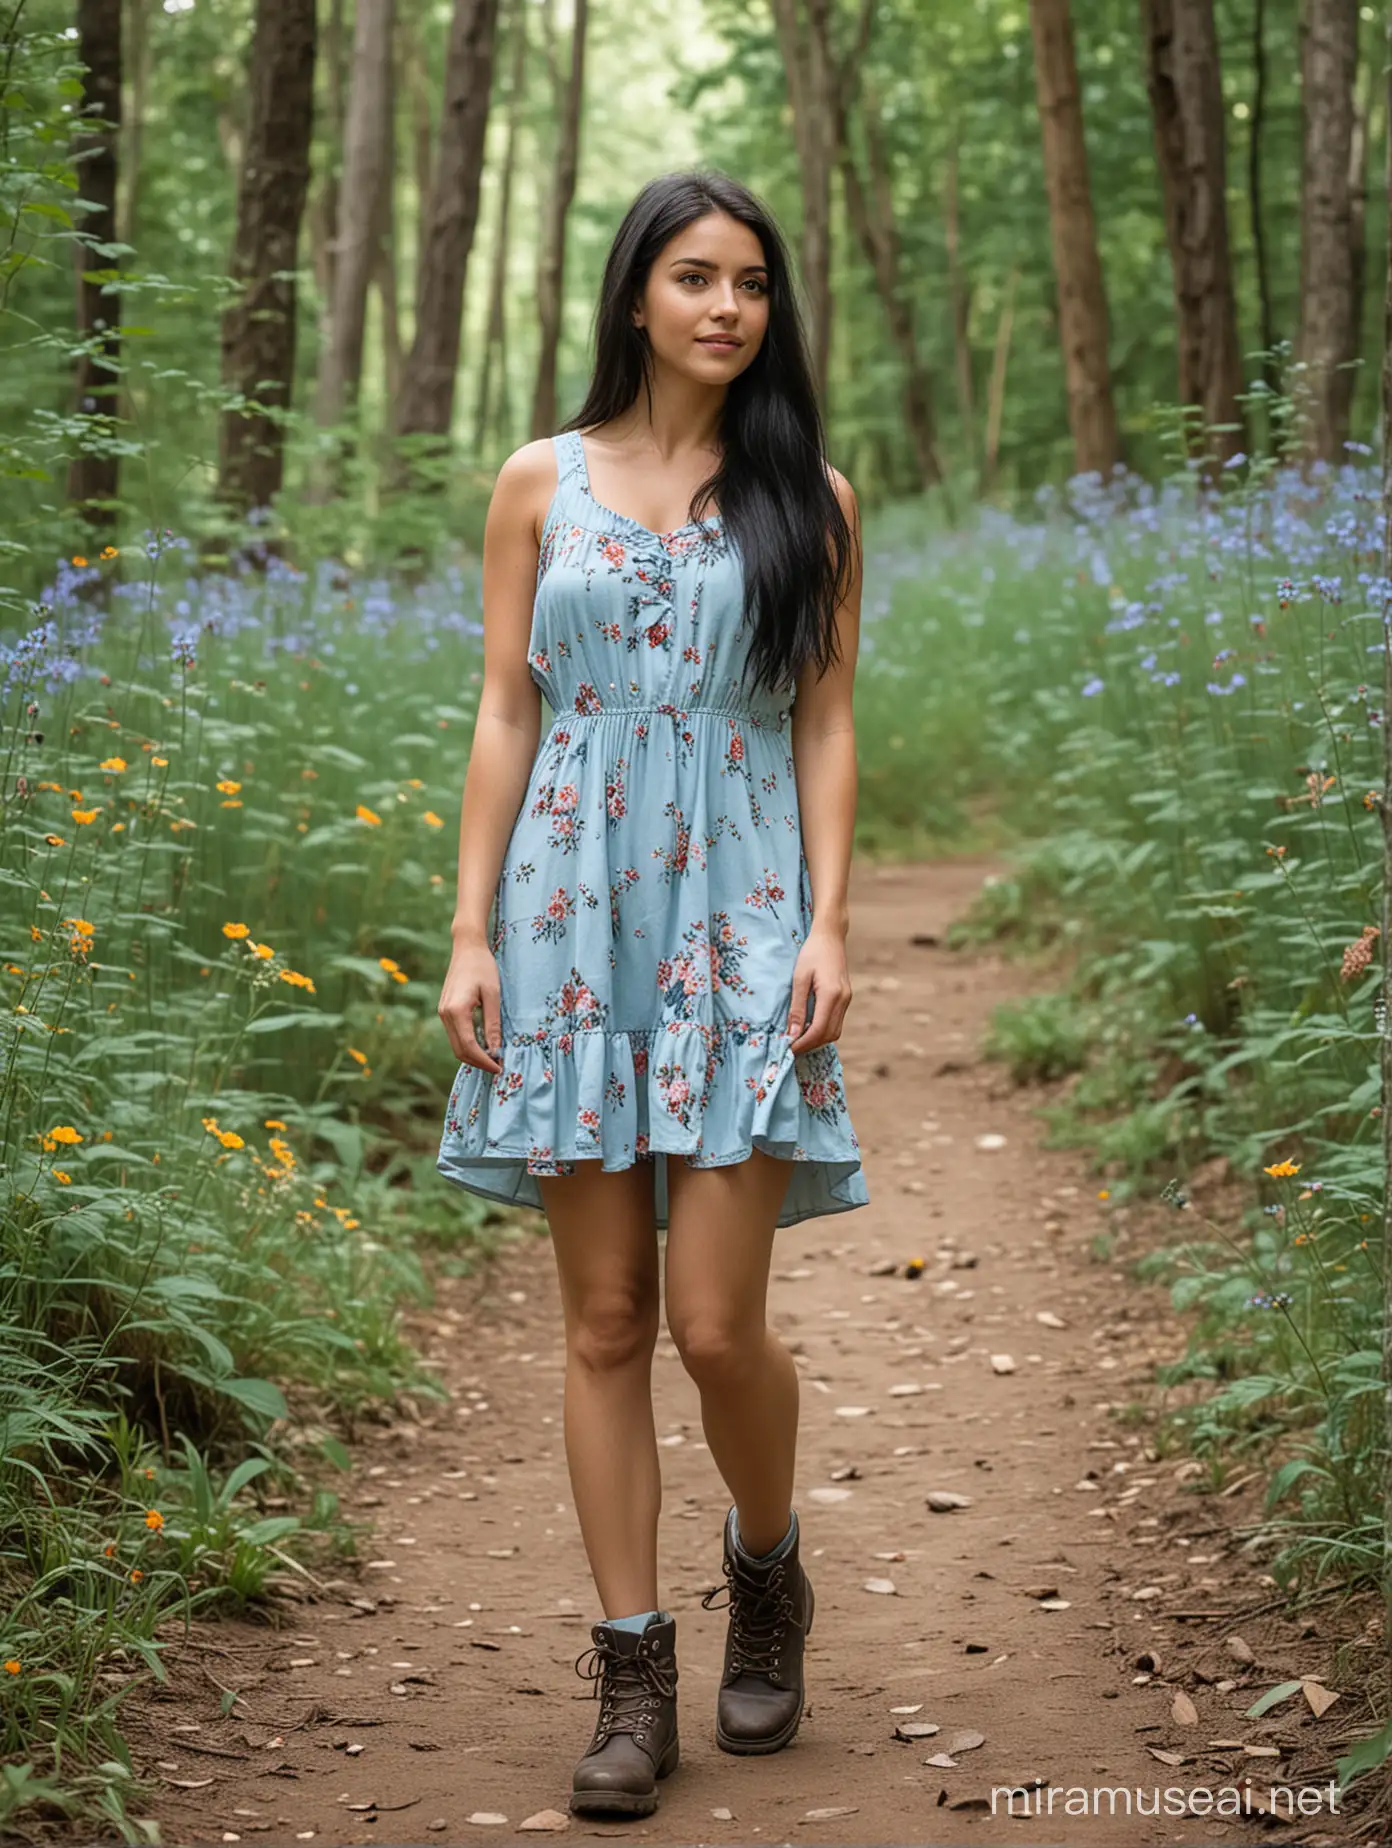 short slim girl, long black hair, flowers in hair, hazel eyes, light blue short sundress, hiking boots, standing on a forest trail, 